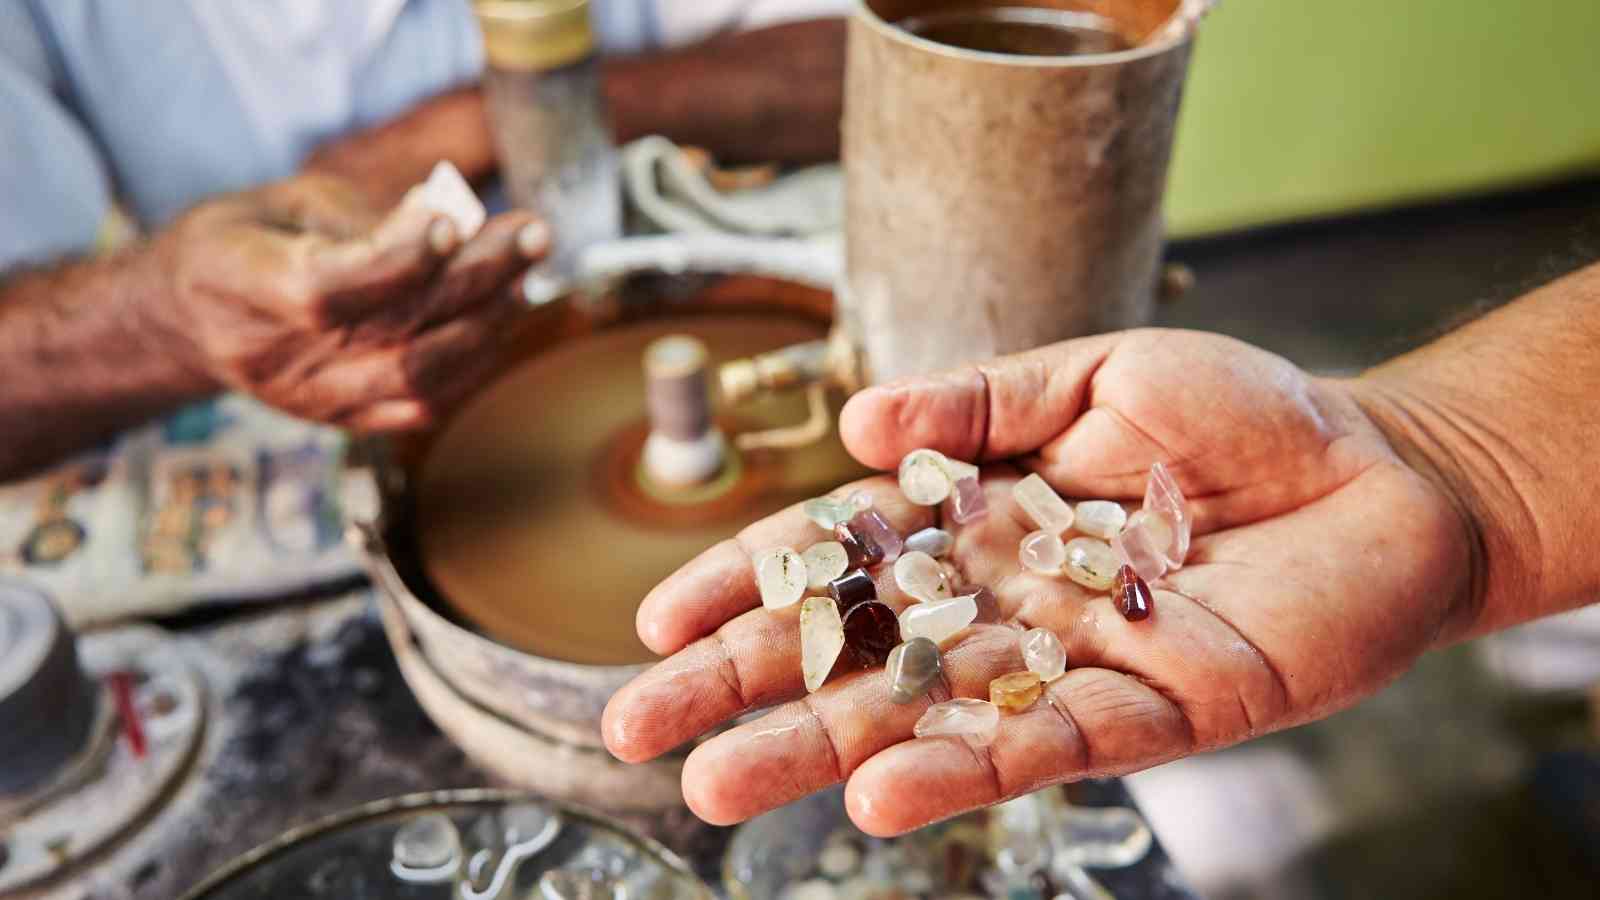 Шри ланка таблетки. Ратнапура Шри-Ланка драгоценные камни. Добыча драгоценных камней на Шри Ланке. Драгоценности Шри Ланка. Шри Ланка драг камни.